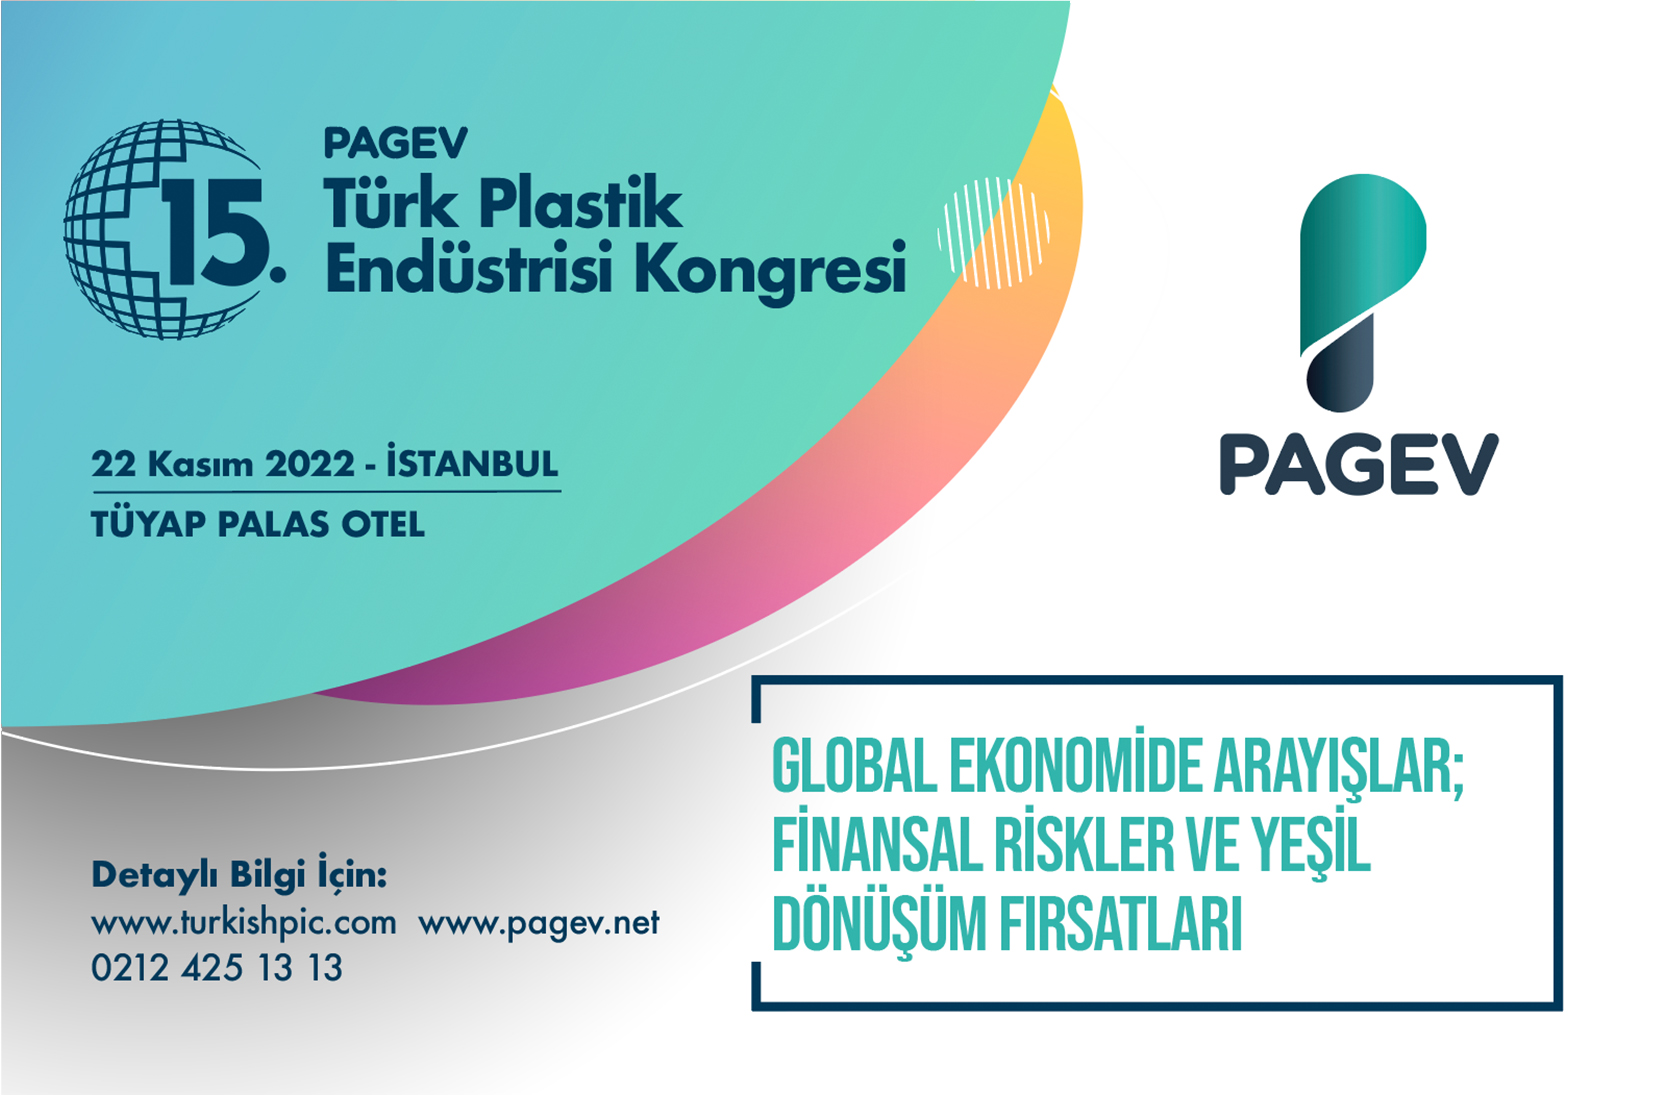 15. PAGEV Türk Plastik Endüstrisi Kongresi Programı Açıklandı!